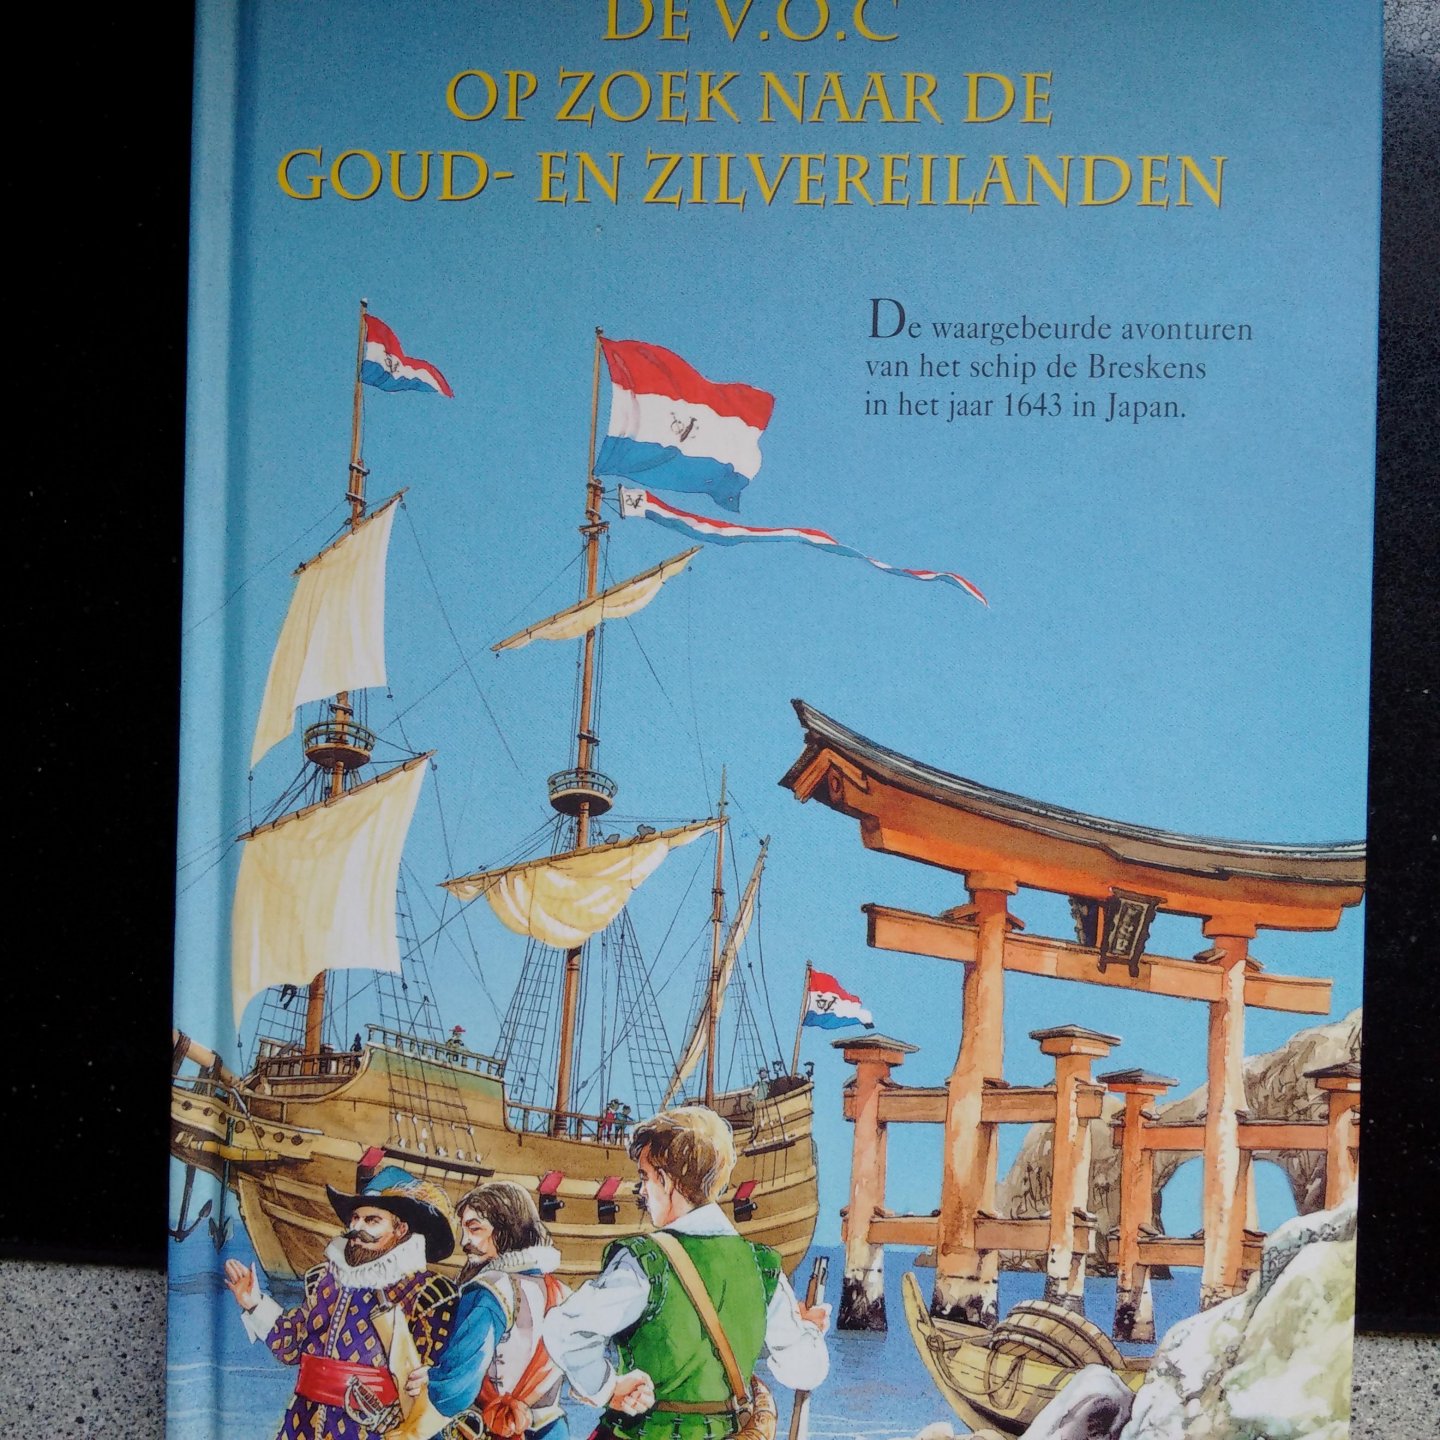 Vonk, Dr, G.P. - De V.O.C. op zoek naar de goud- en zilvereilanden. De waargebeurde avonturen van het schip de Breskens in het jaar 1643 in Japan